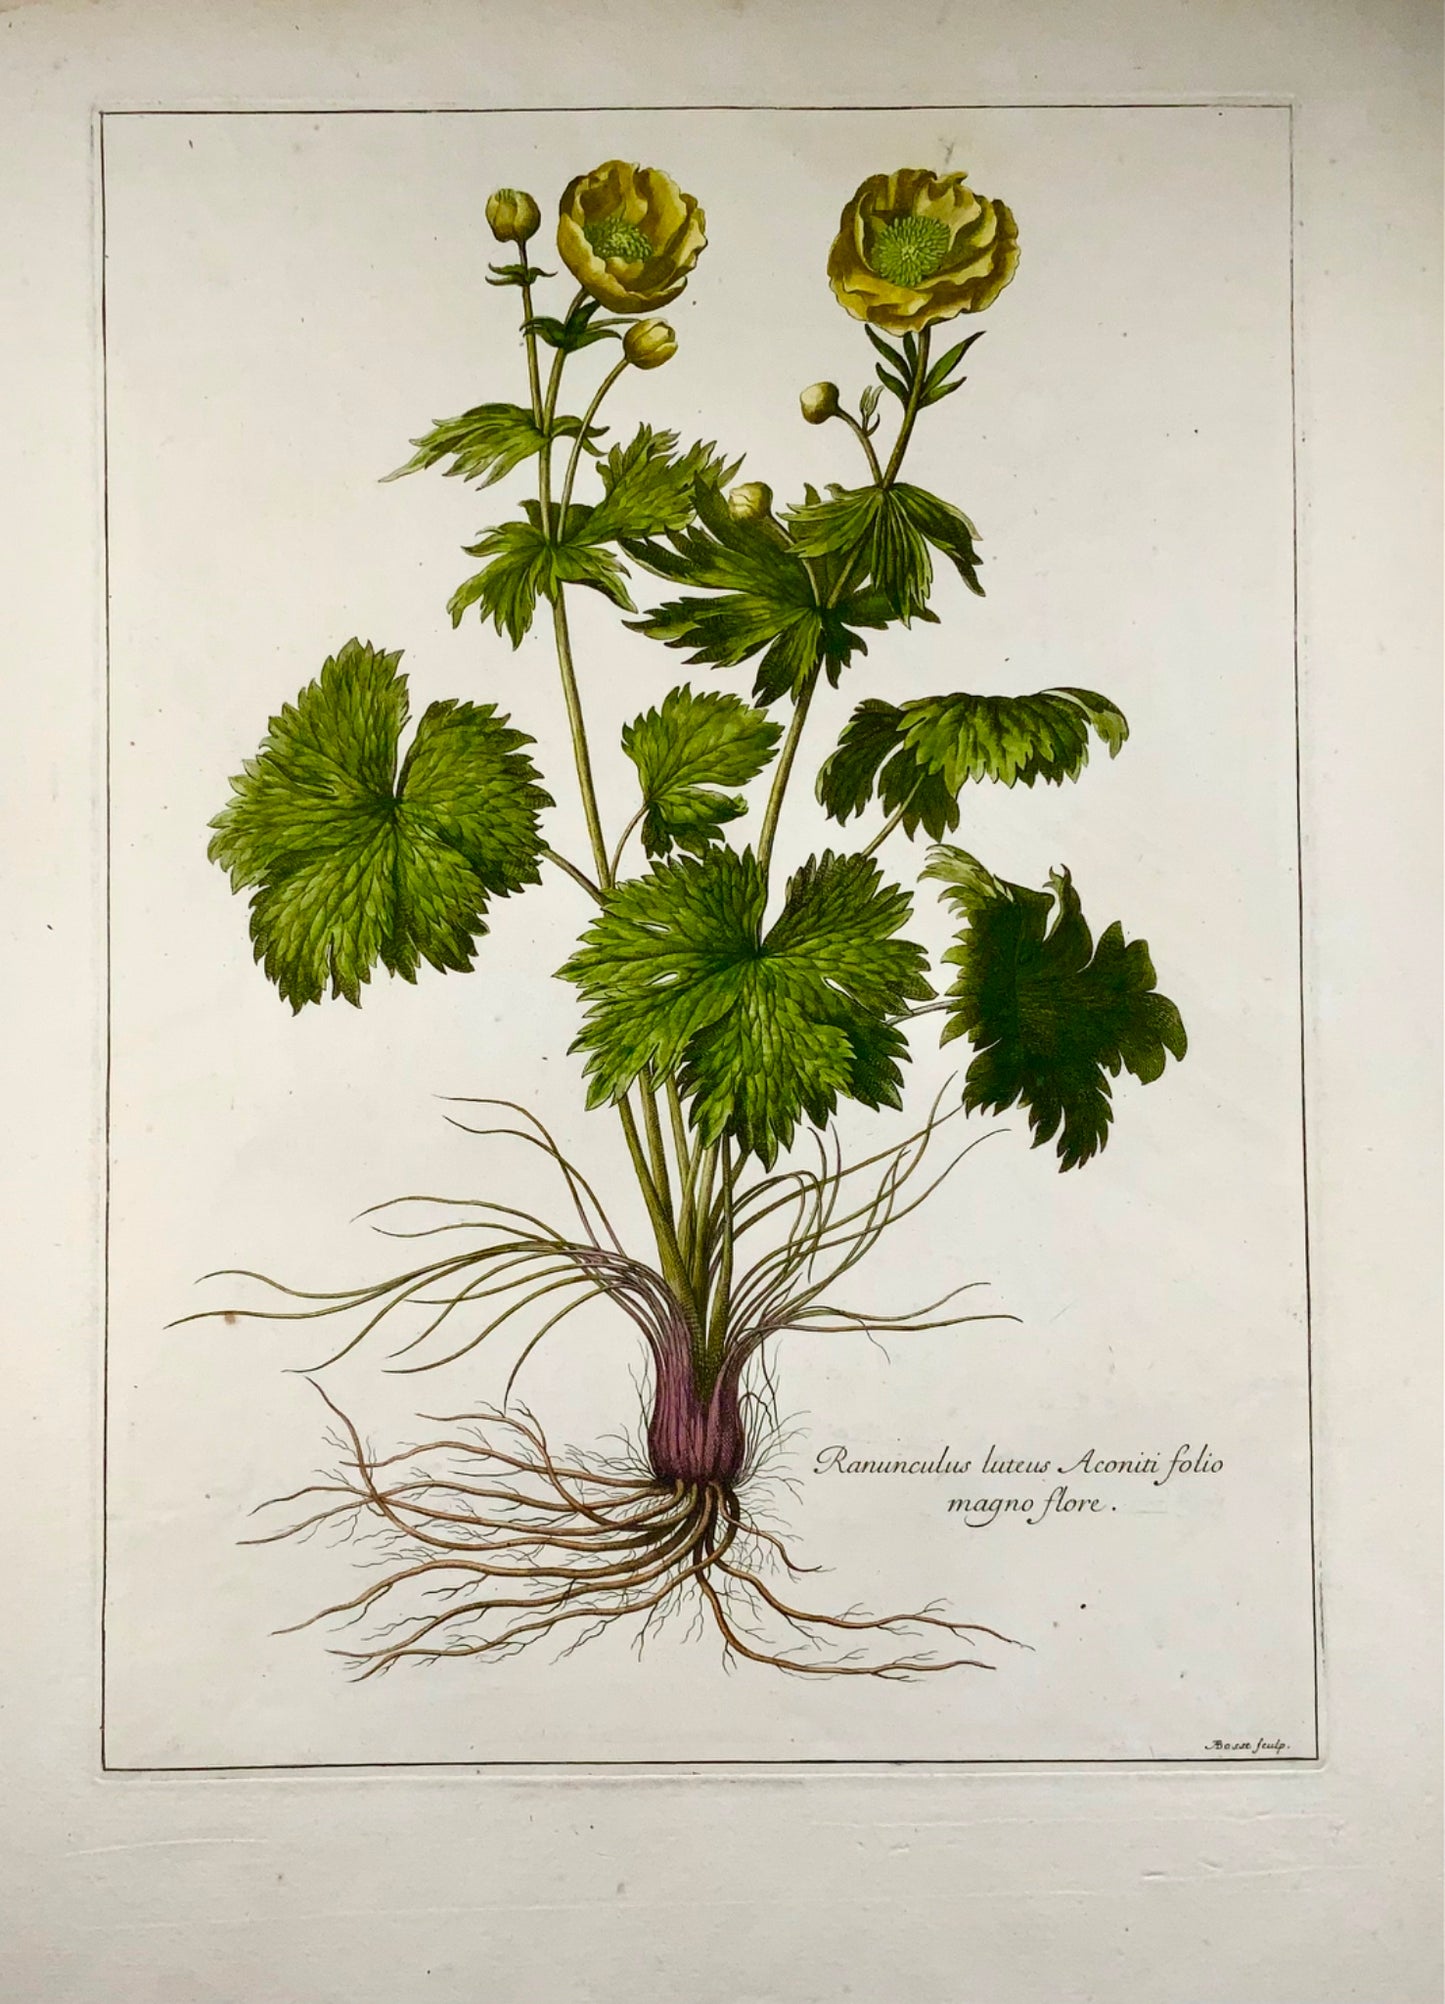 1670 vers. Bouton d'Or, Nicolas Robert (1610-1684) ; A. Bosse, botanique 54cm